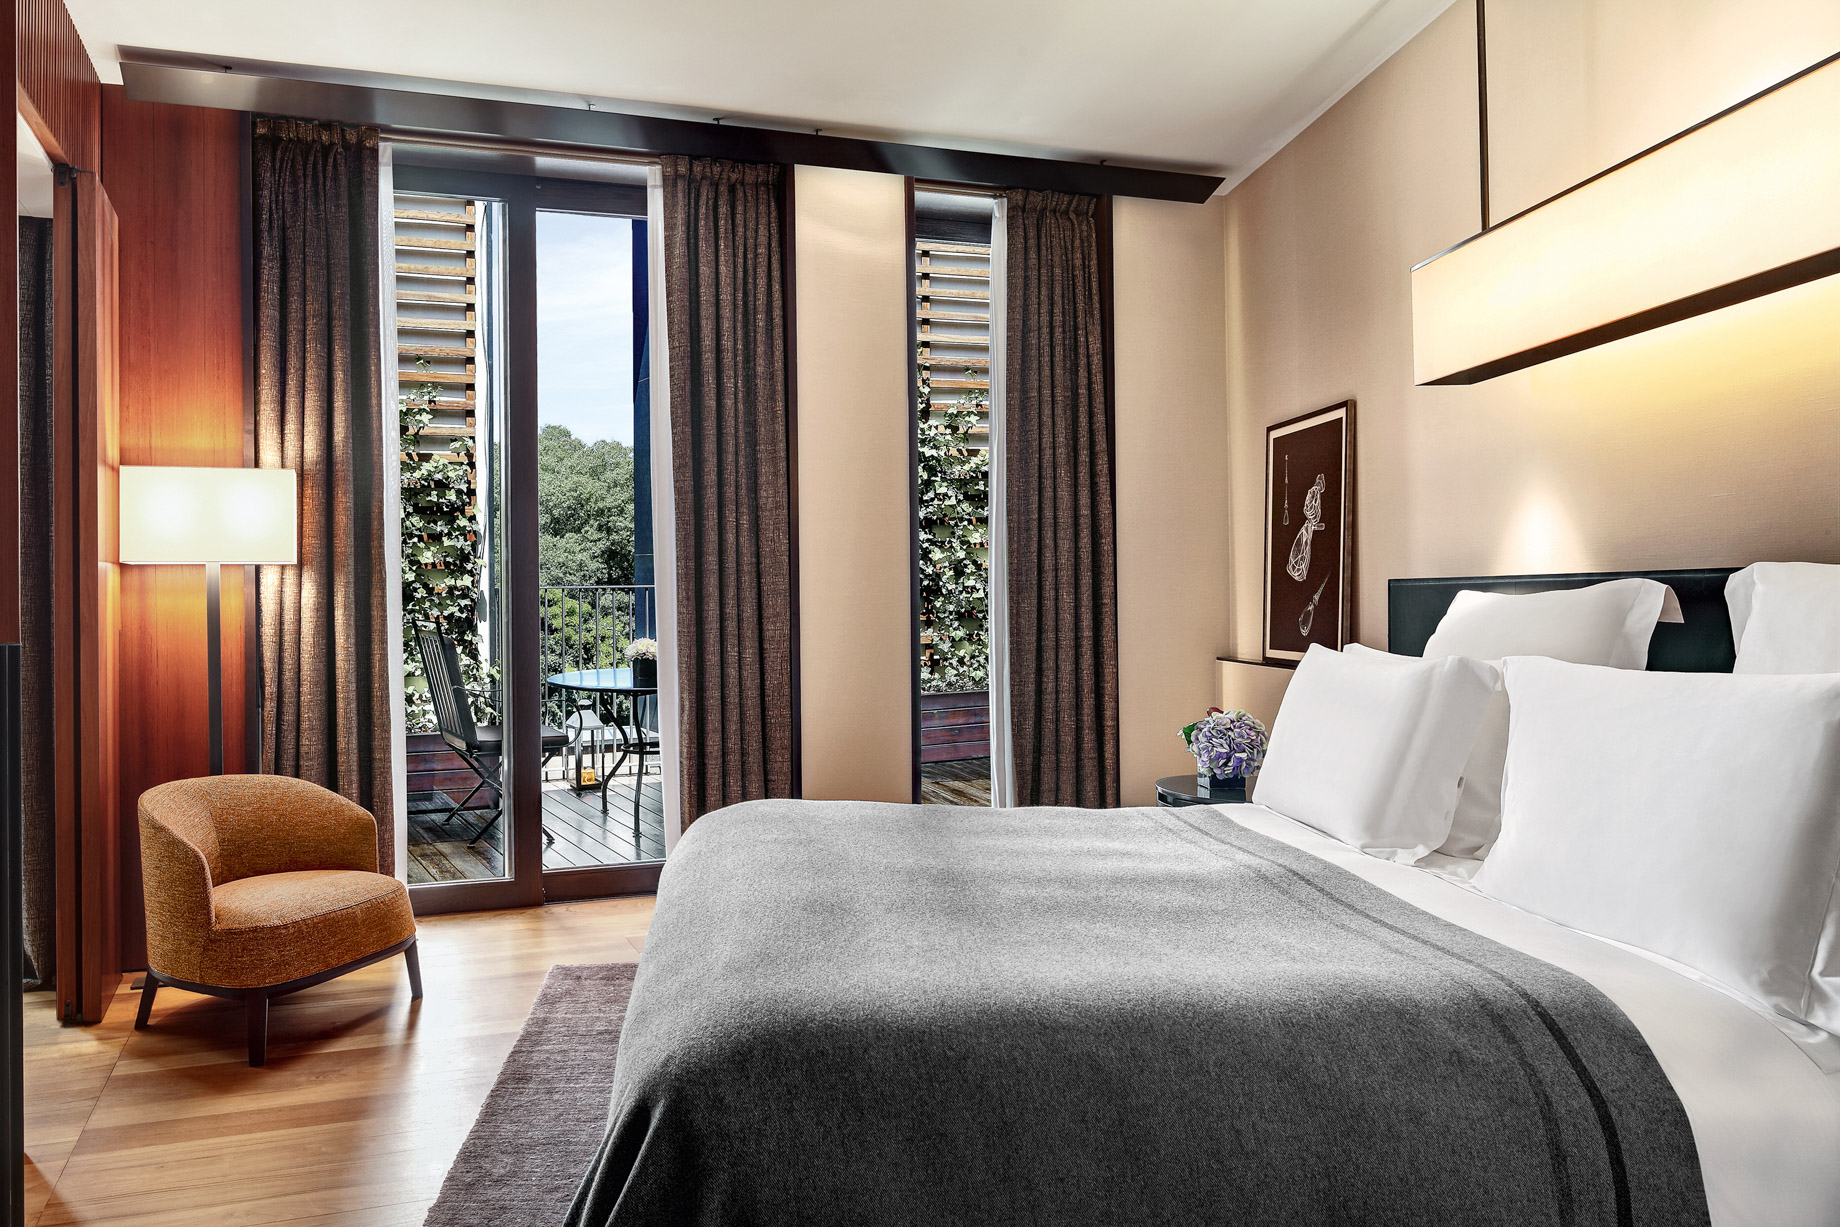 Bvlgari Hotel Milano – Milan, Italy – Premium Suite Bedroom